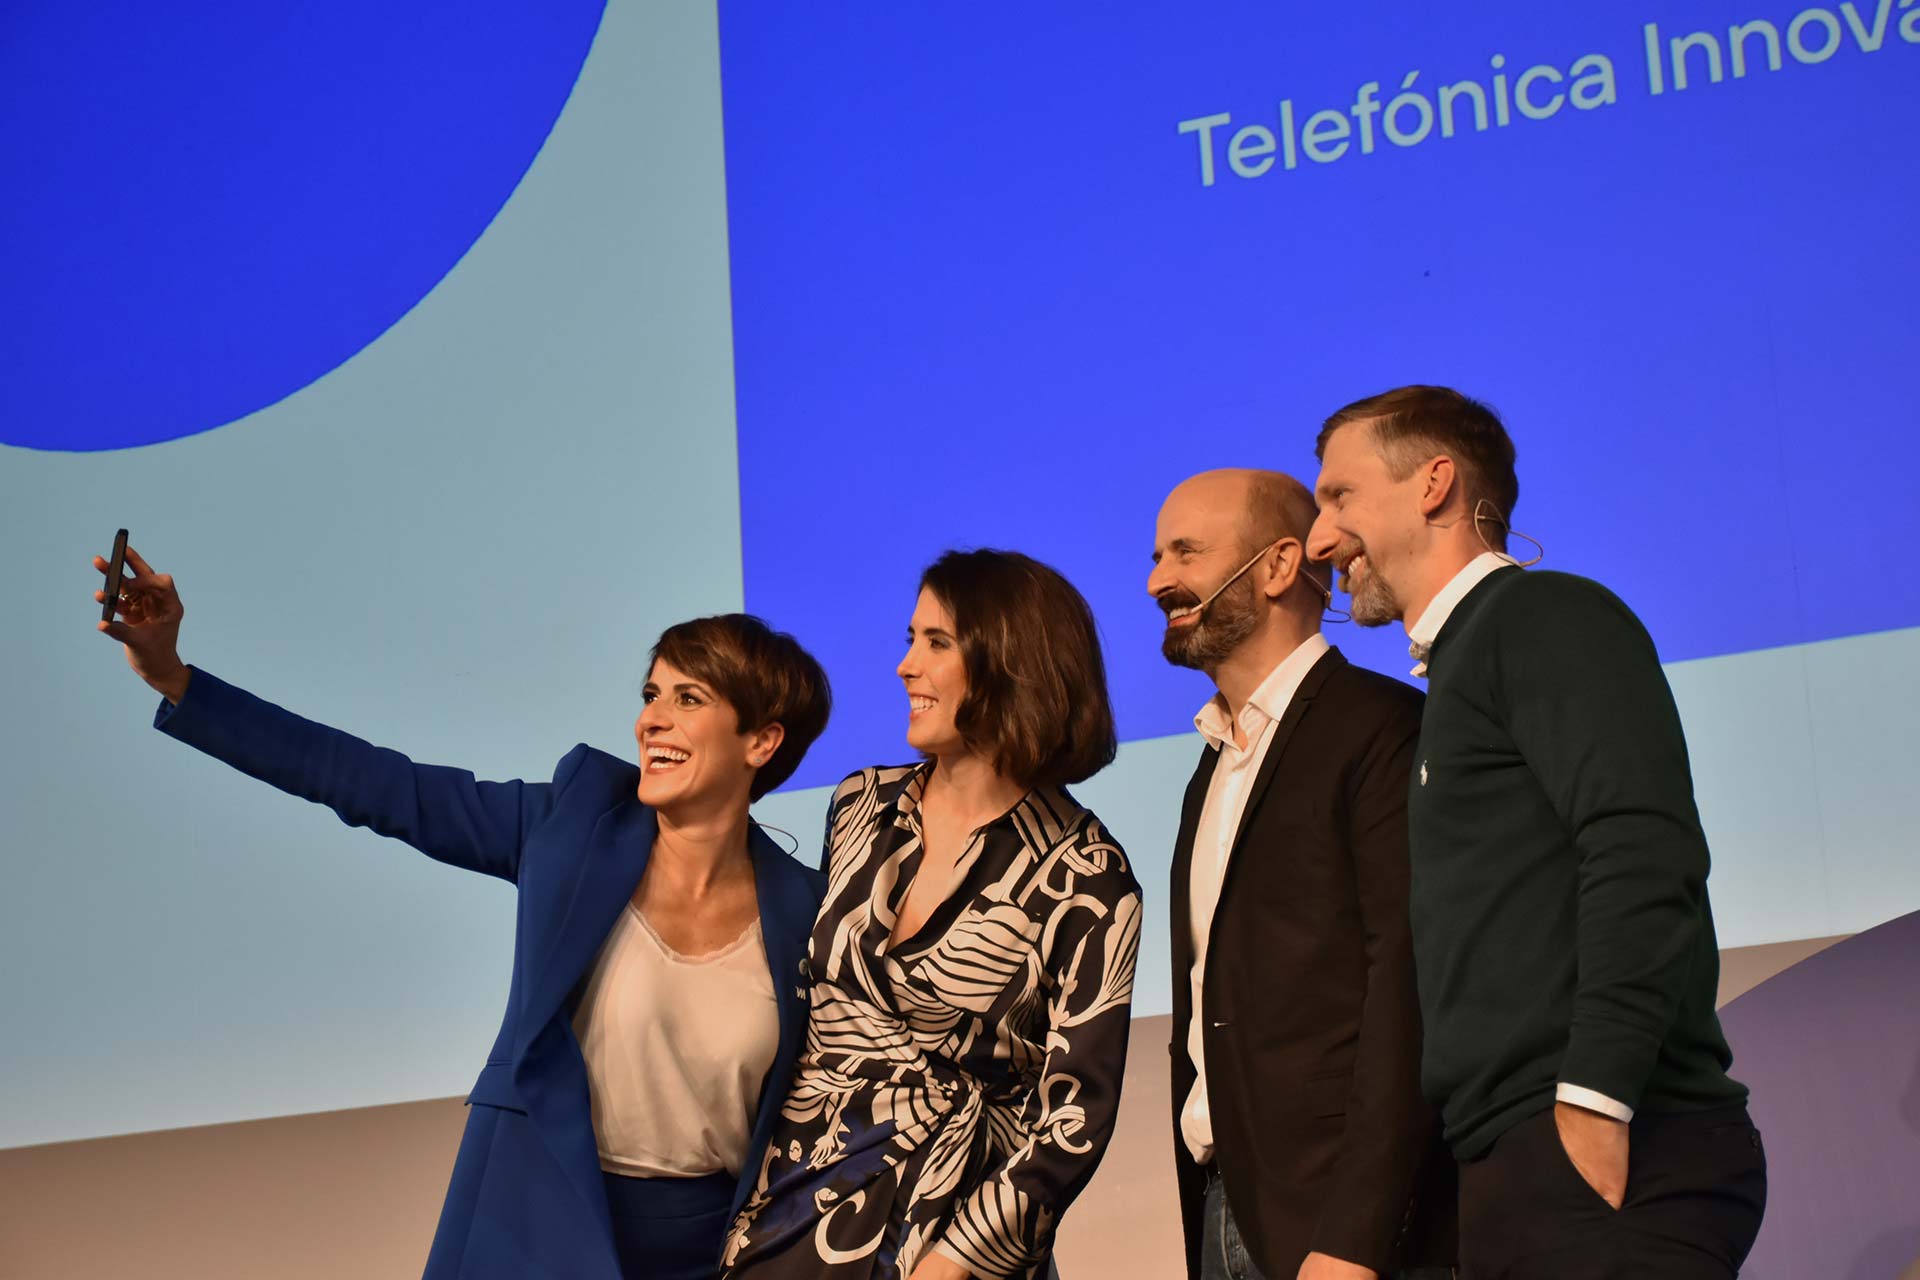 Telefónica Innovation Day 2021 30